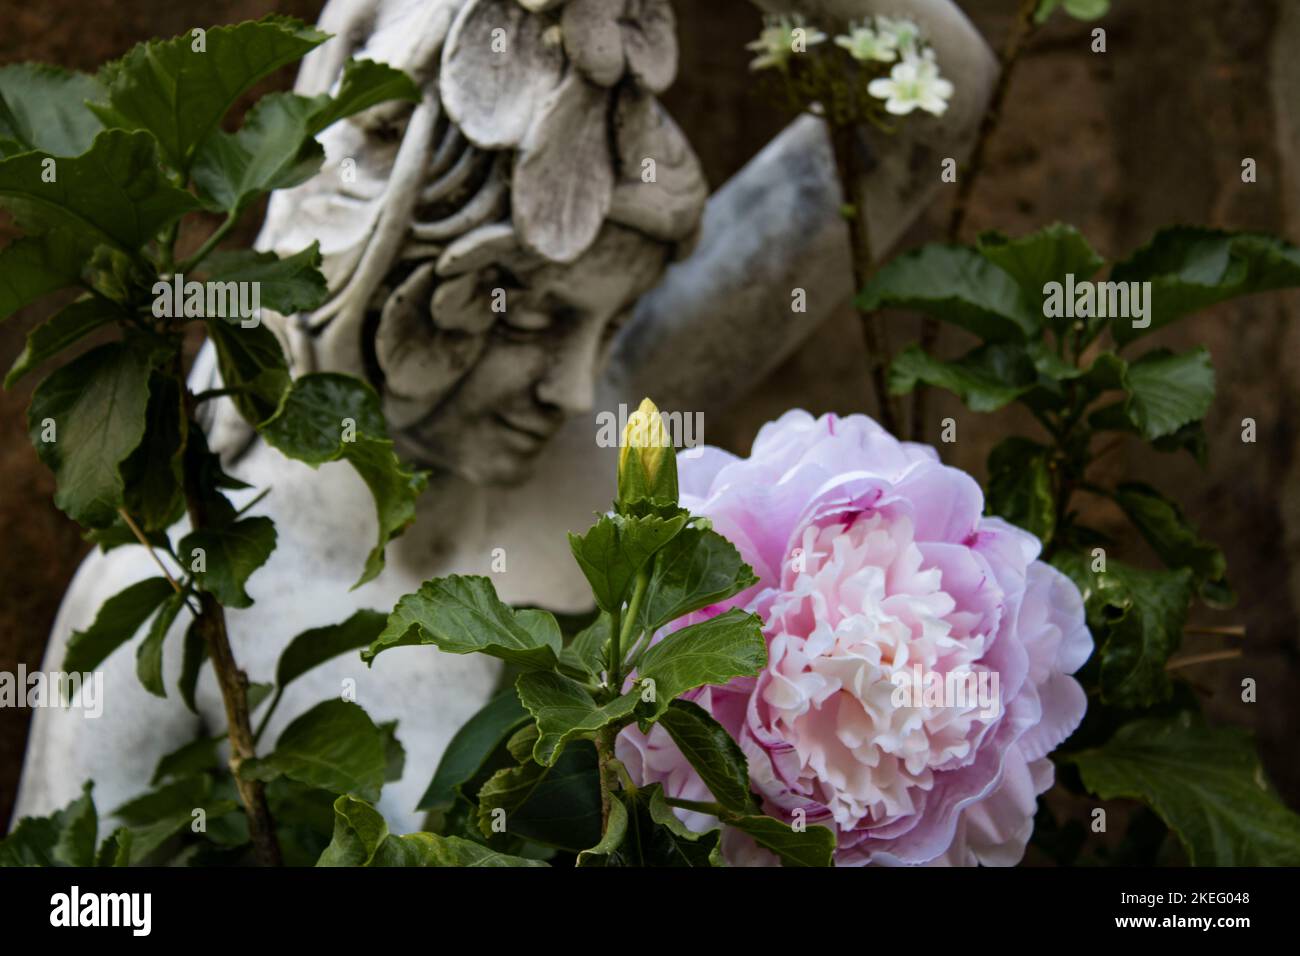 Une fleur rose qui cache la statue d'une femme souriante Banque D'Images